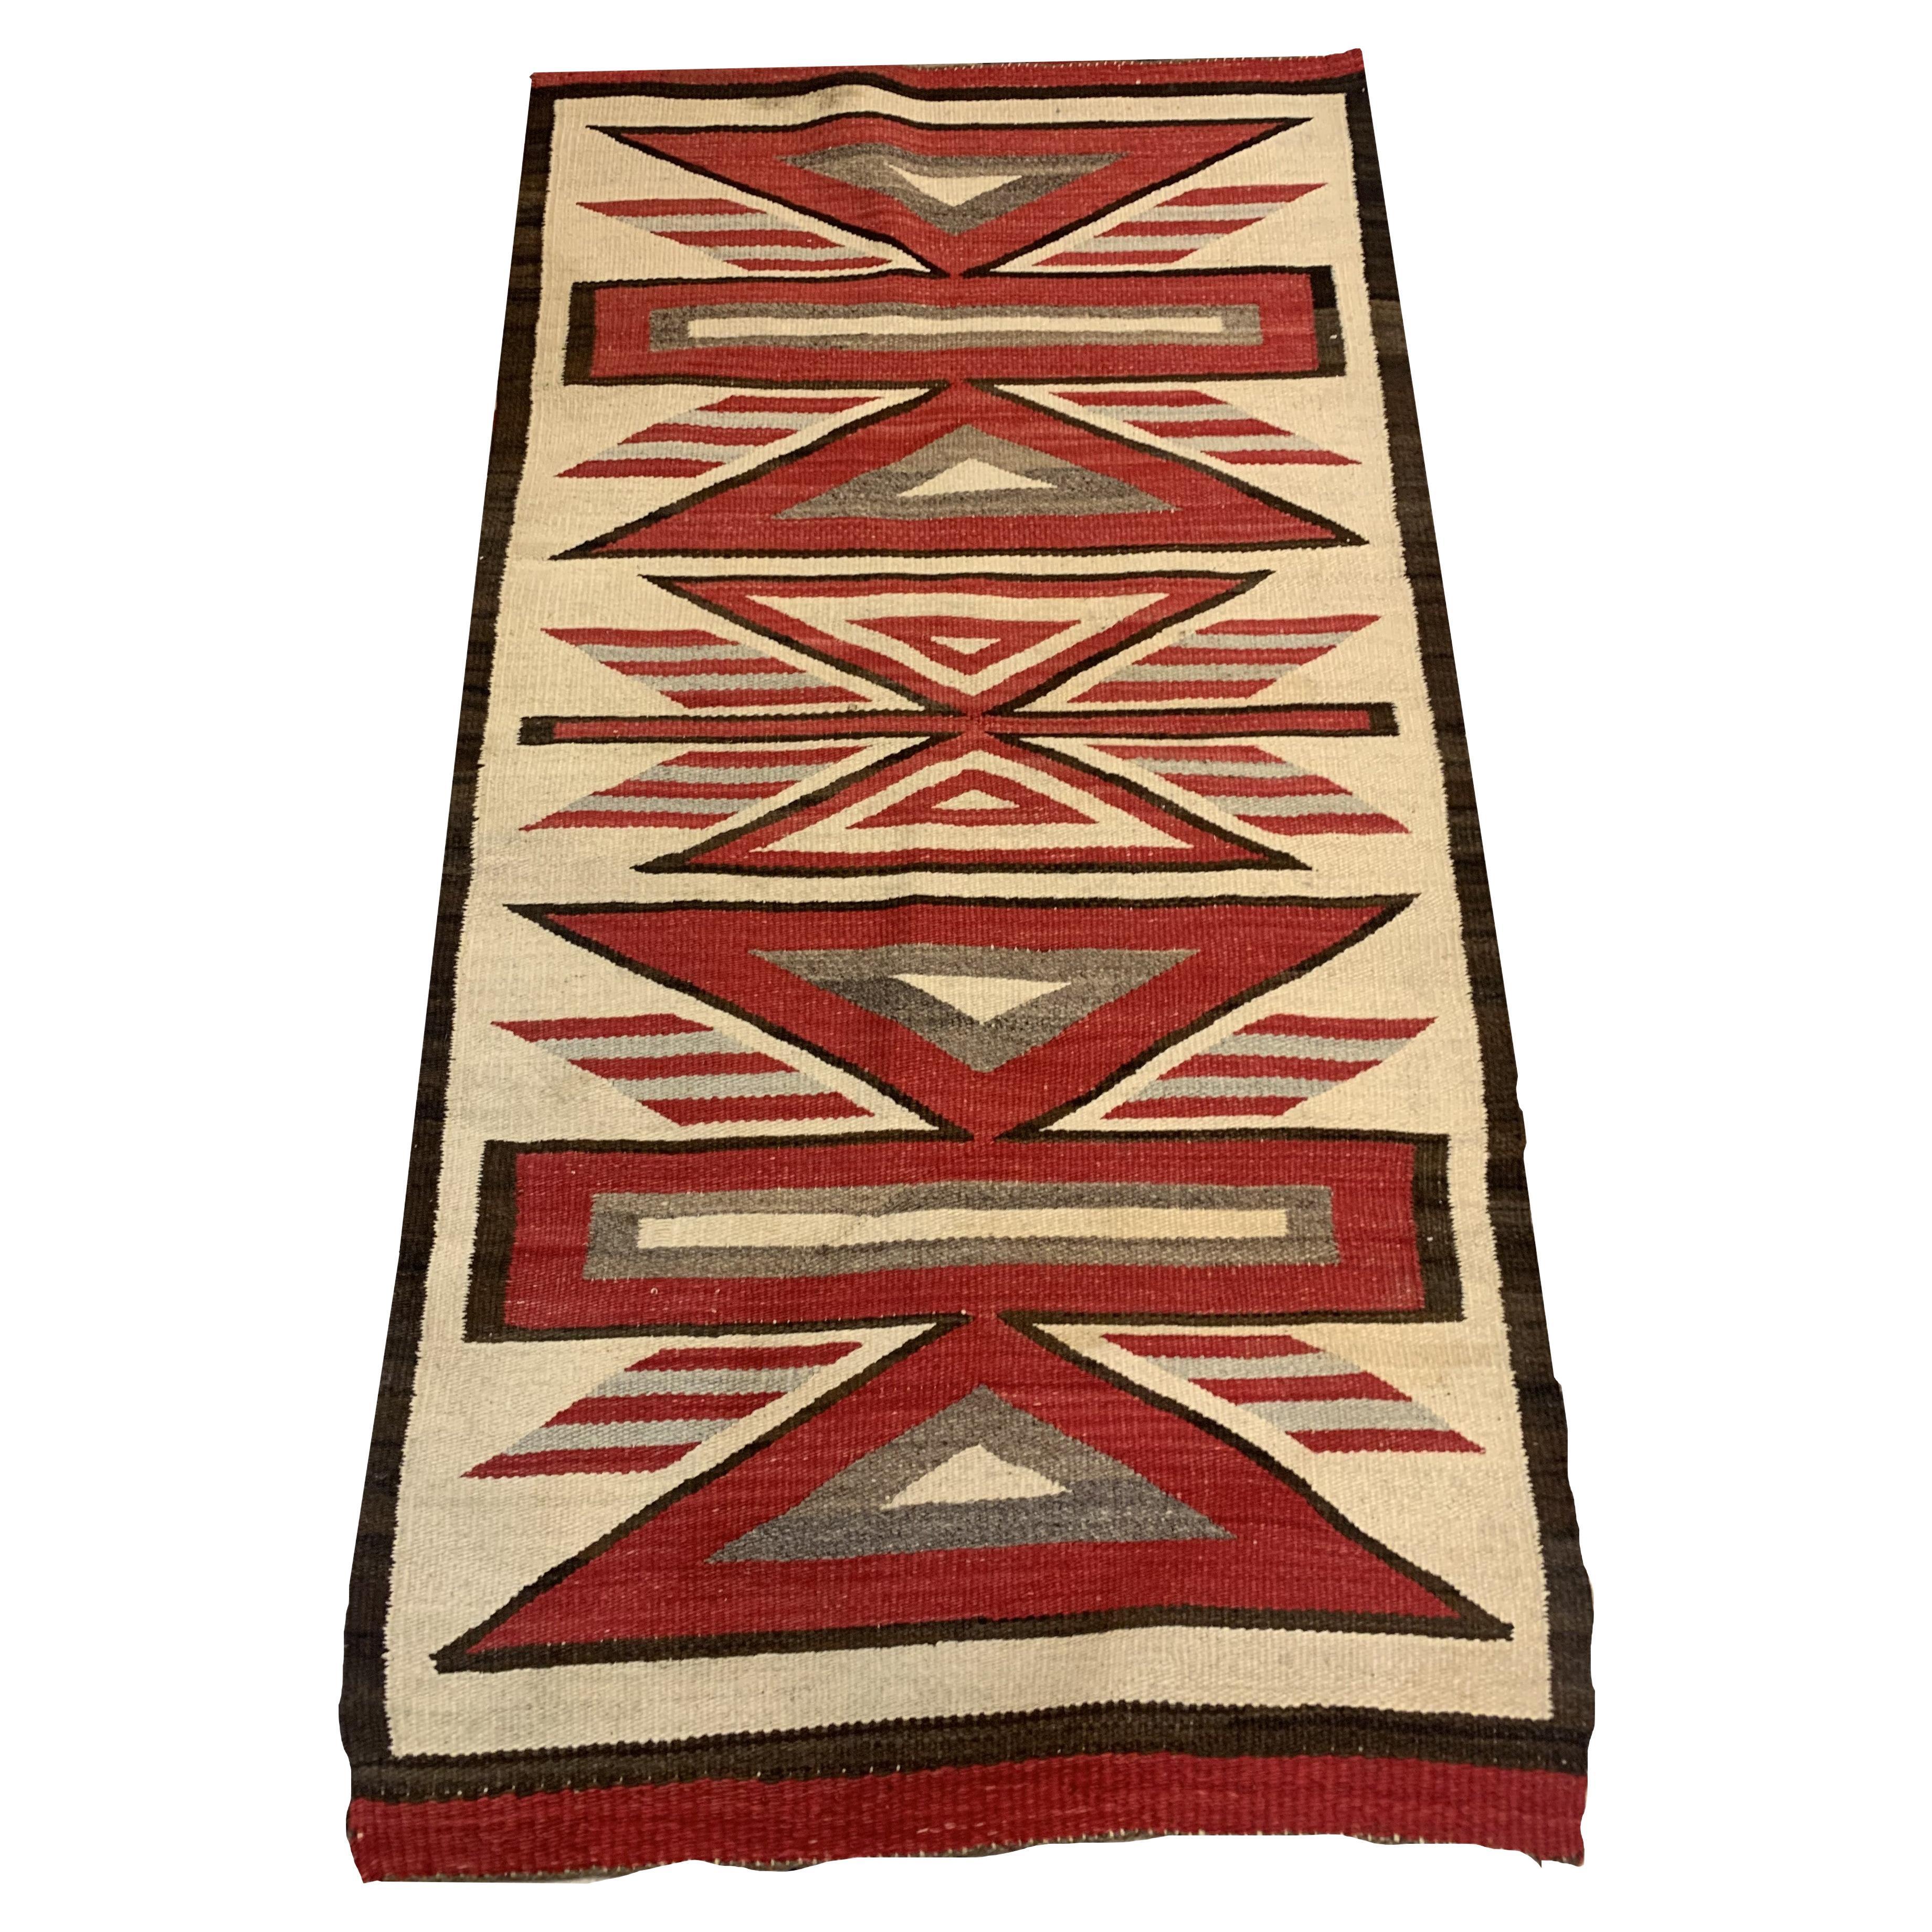 Wir stellen unseren handgefertigten antiken Navajo-Teppich vor, ein fesselndes, geschichtsträchtiges Stück. Mit den Maßen 2,10' x 5,2' (89cm x 158cm) ist dieser Teppich aus den frühen 1900er Jahren in gutem Zustand und aus Wolle gefertigt.

Farben &